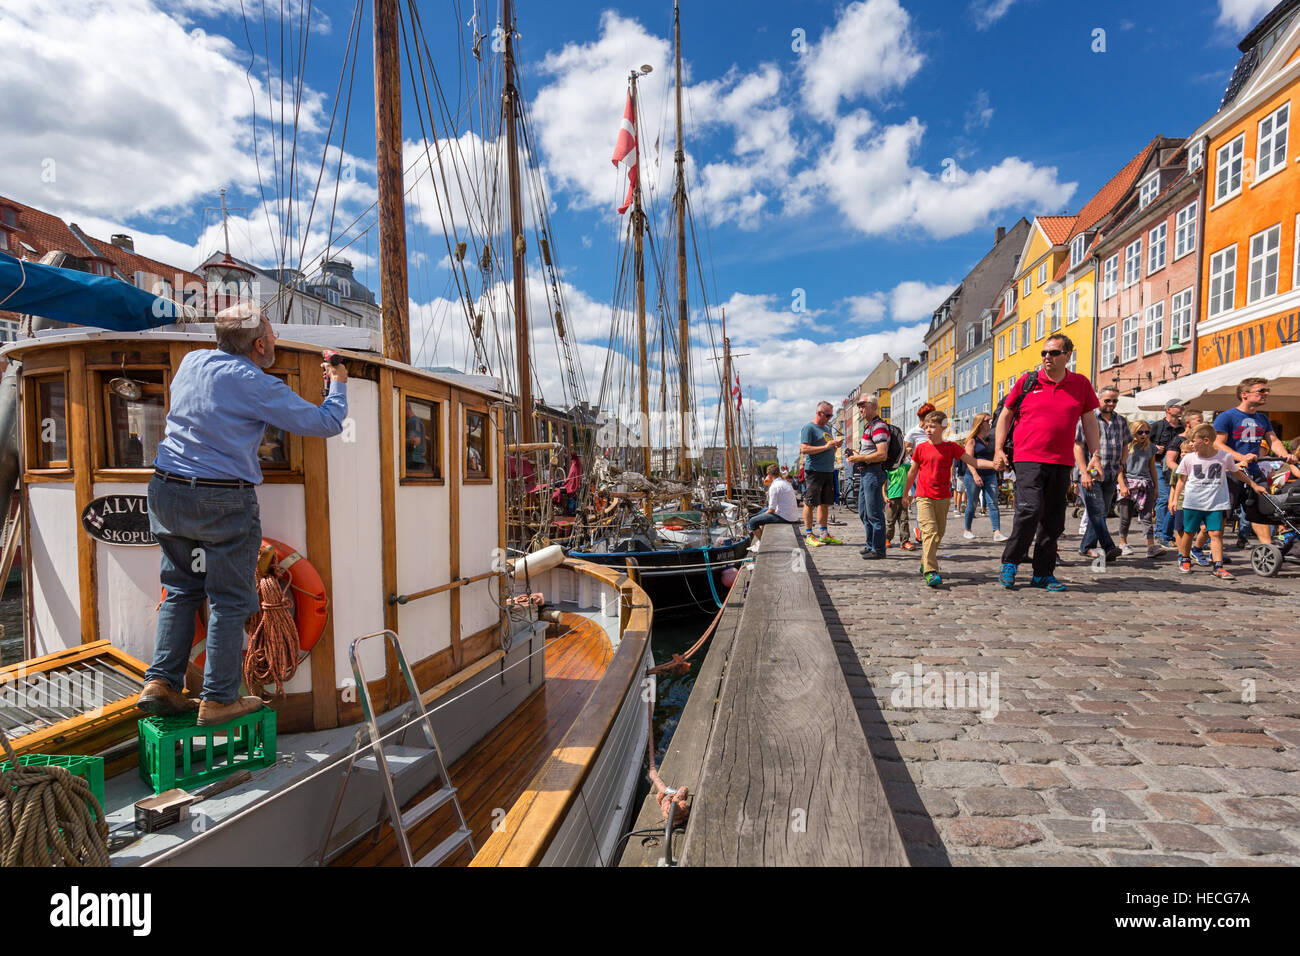 Un homme peignant son bateau le long du canal de Nyhavn, Copenhague, Danemark Banque D'Images